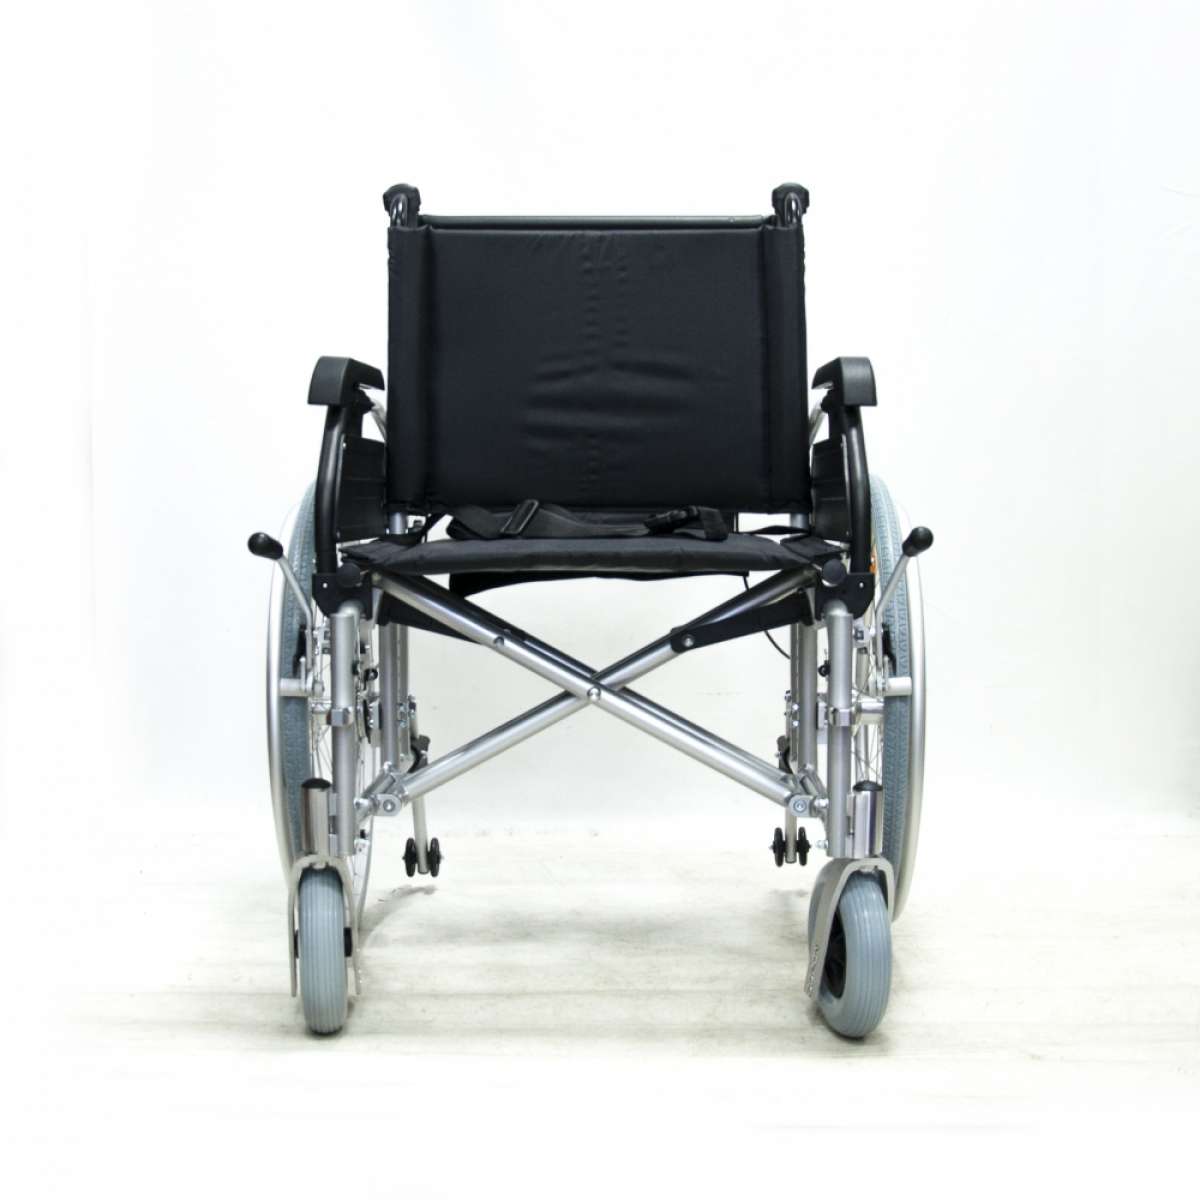 Кресло - коляска компактное складное повышенной грузоподъёмности KY974